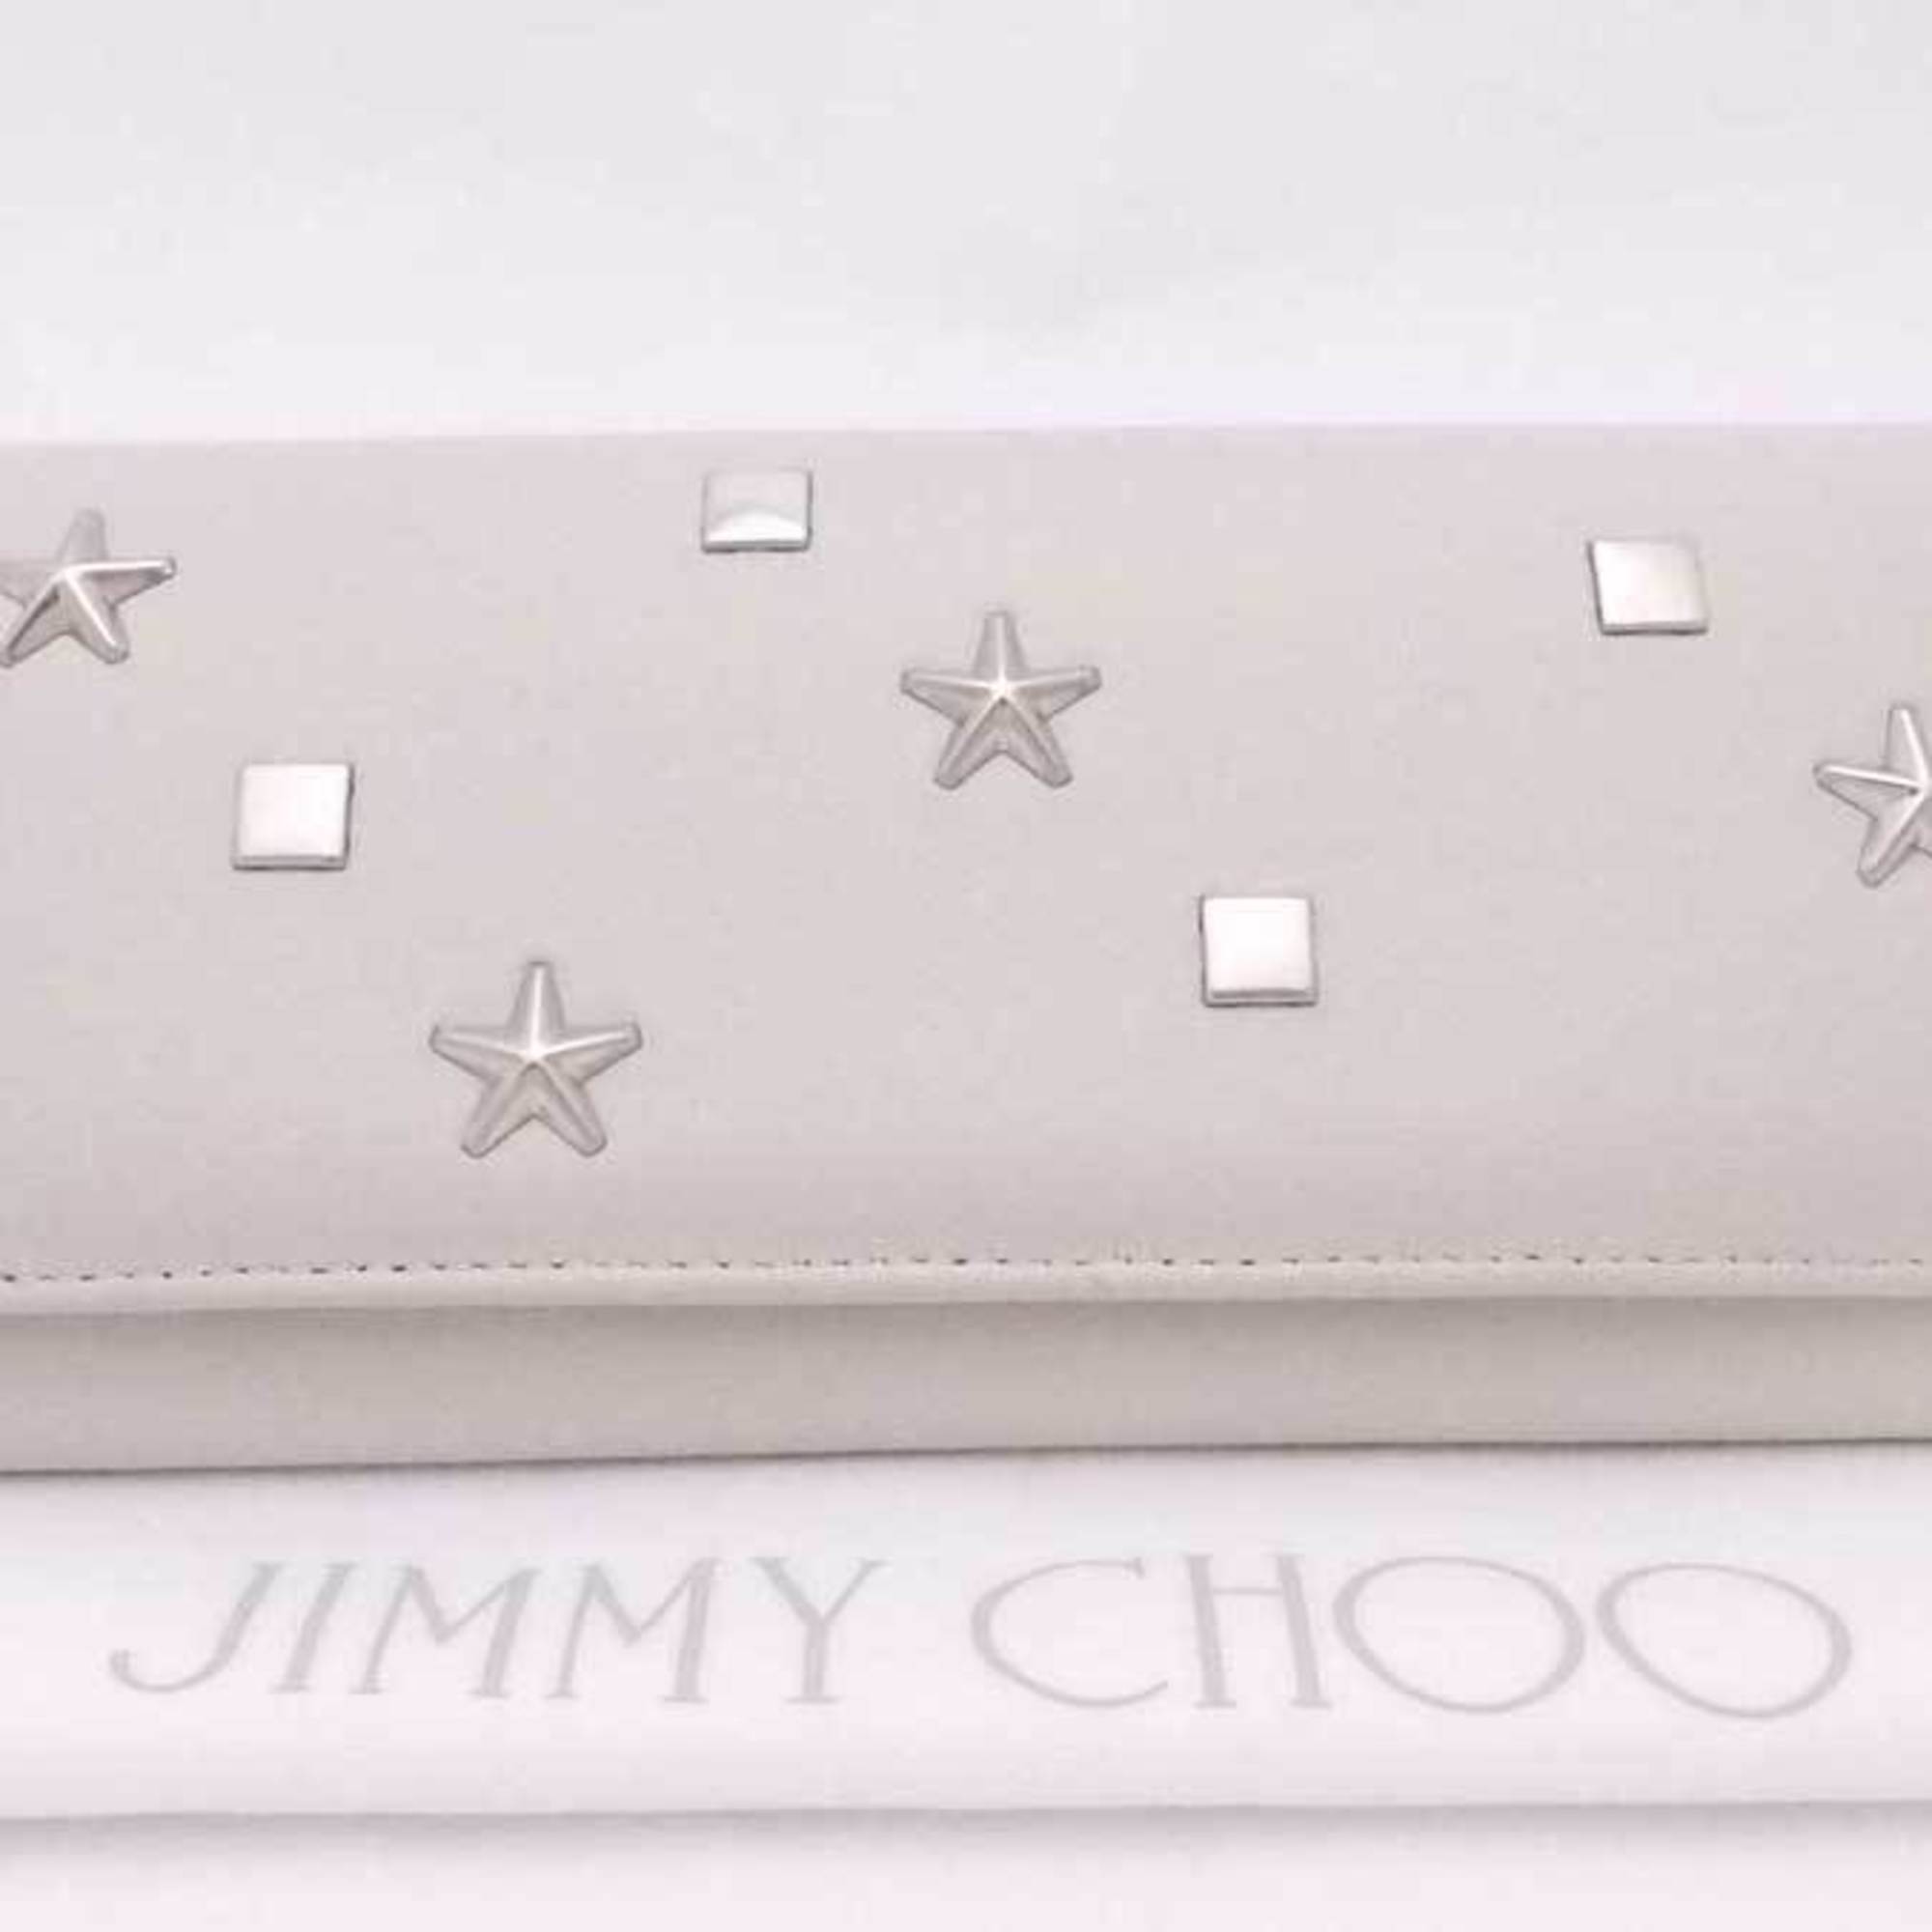 Jimmy Choo JIMMY CHOO Bi-Fold Long Wallet Star Studs Leather/Metal Light Gray x Silver Women's